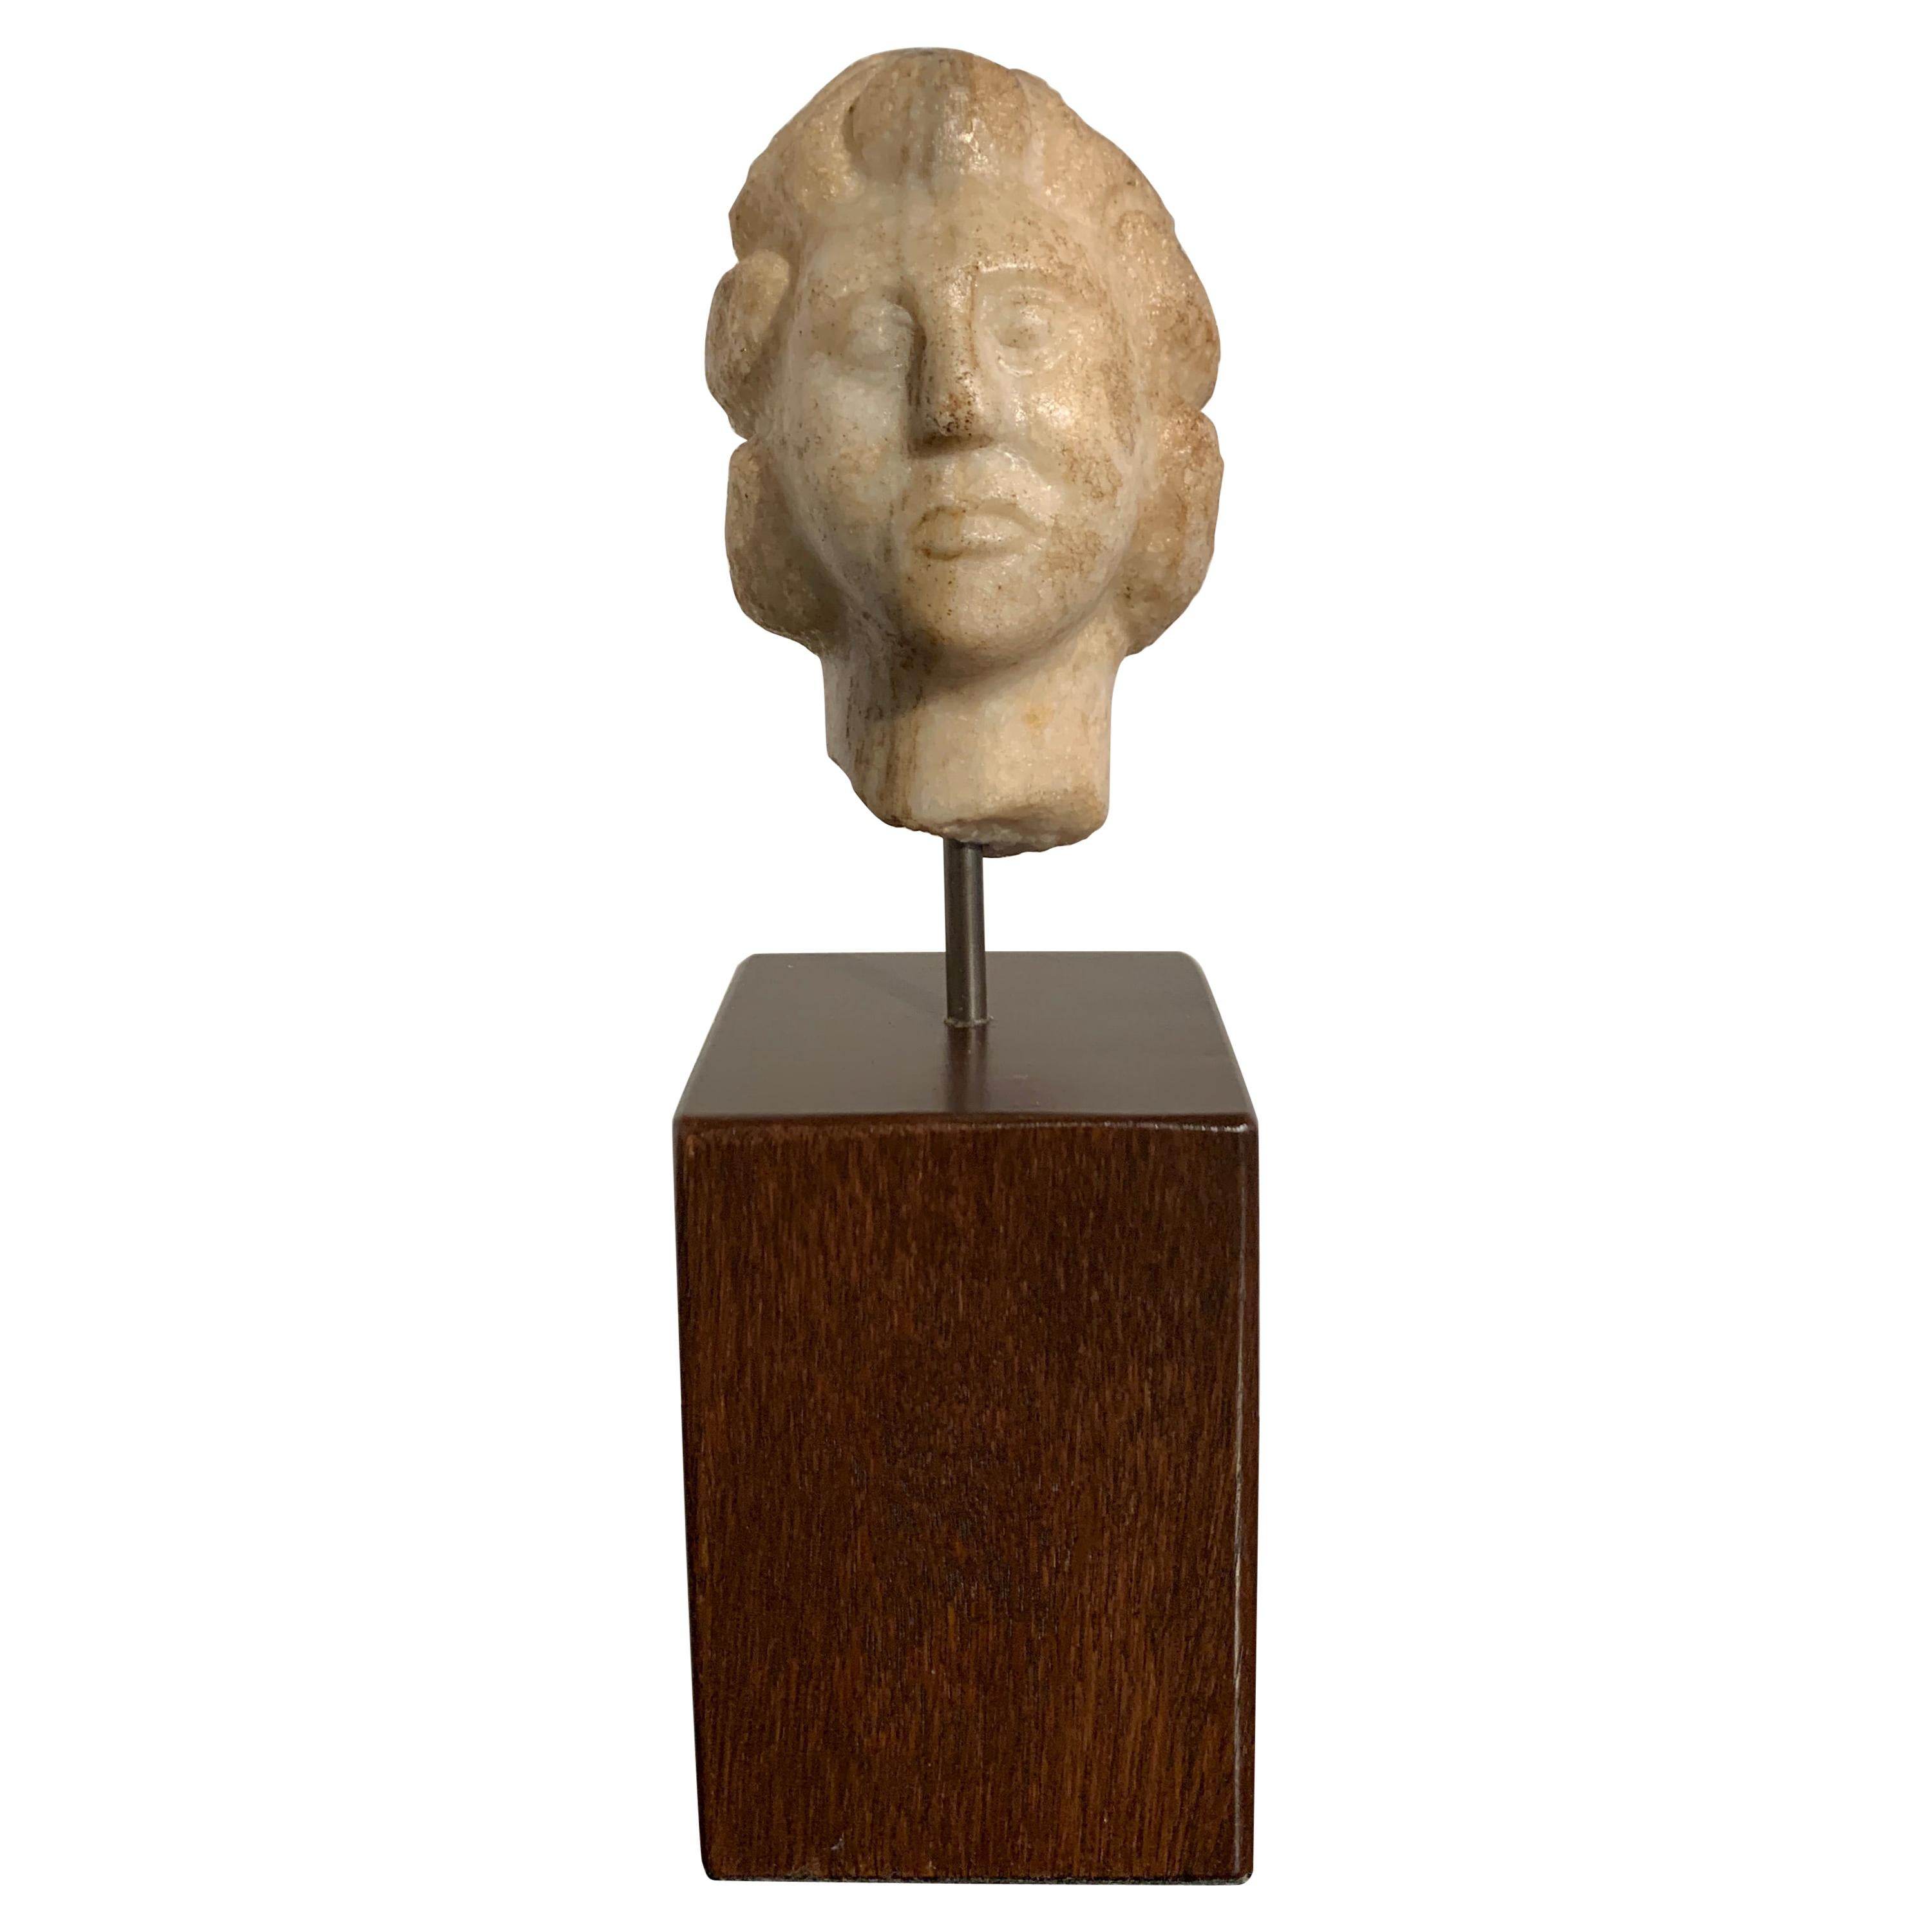 Petite tête hellénistique en marbre parthien d'un homme, vers le 2e au 1er siècle avant J.-C.